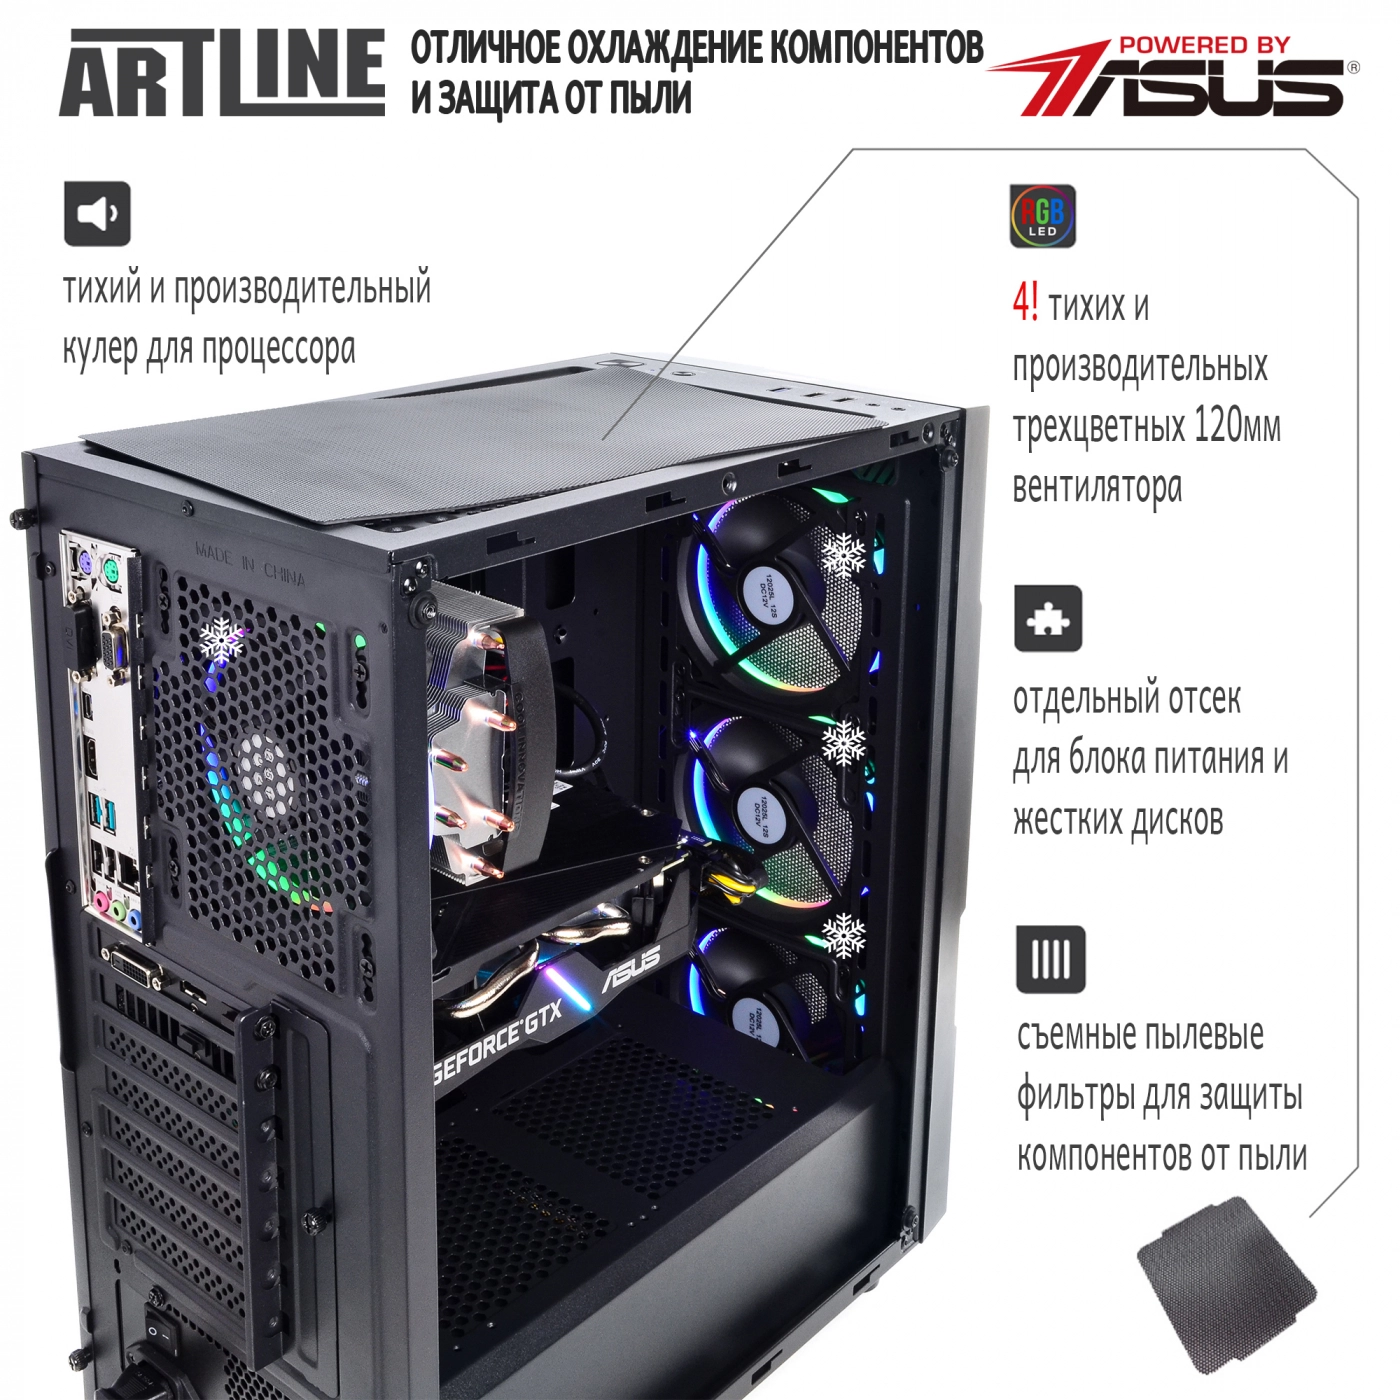 Купить Компьютер ARTLINE Gaming X44v19 - фото 2